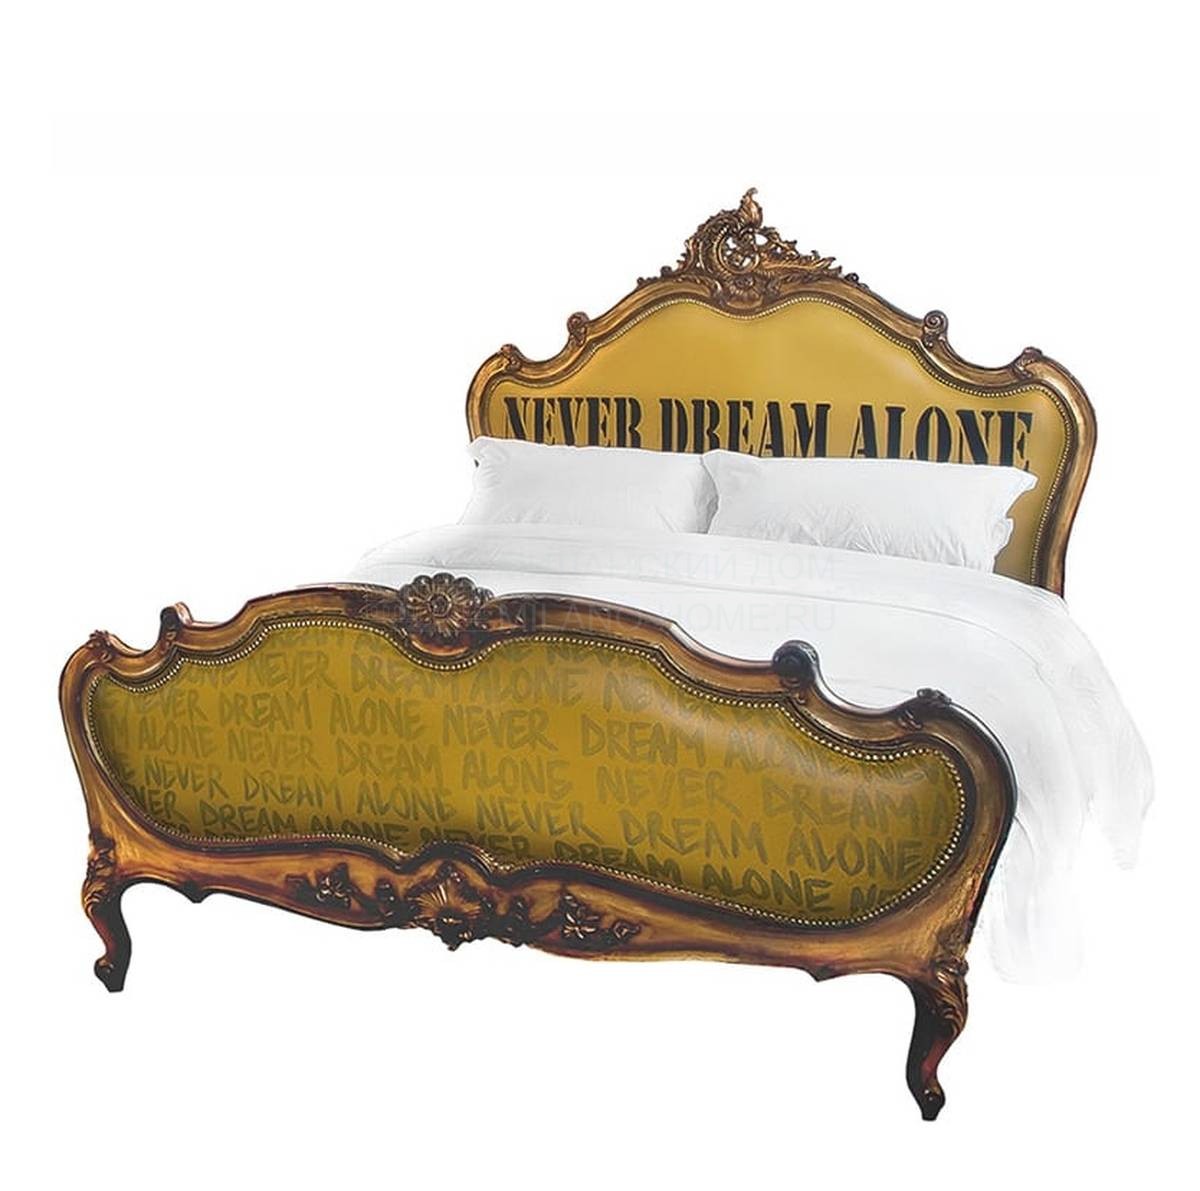 Кровать с комбинированным изголовьем Bed Never Dream alone из Великобритании фабрики JIMMIE MARTIN